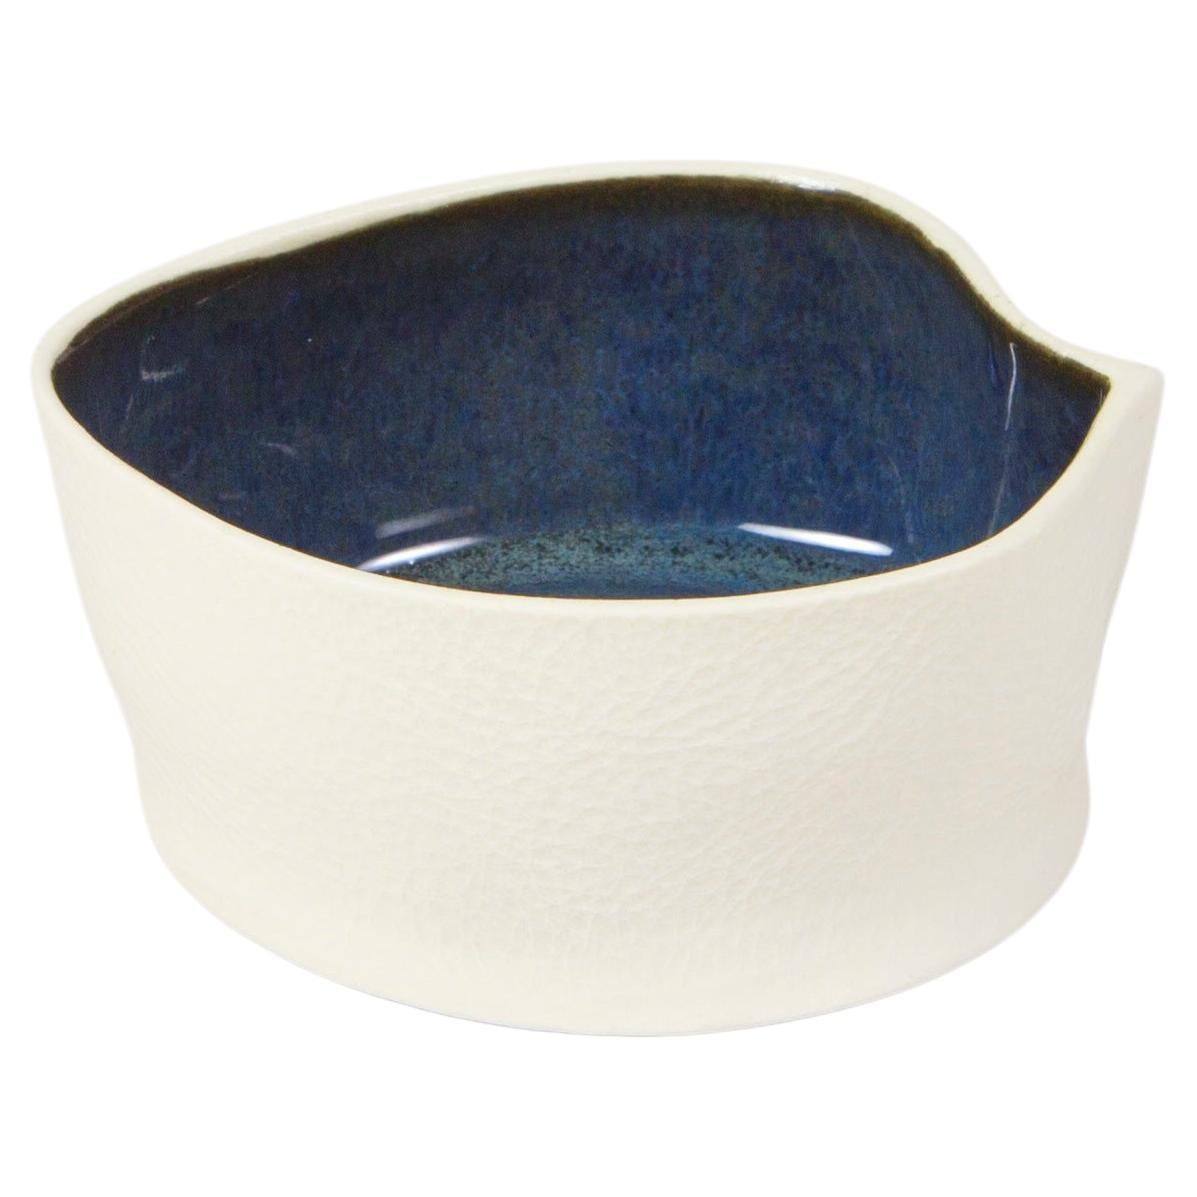 Weiße und dunkelblaue Keramikschale Kawa aus strukturiertem Porzellan, Catchall